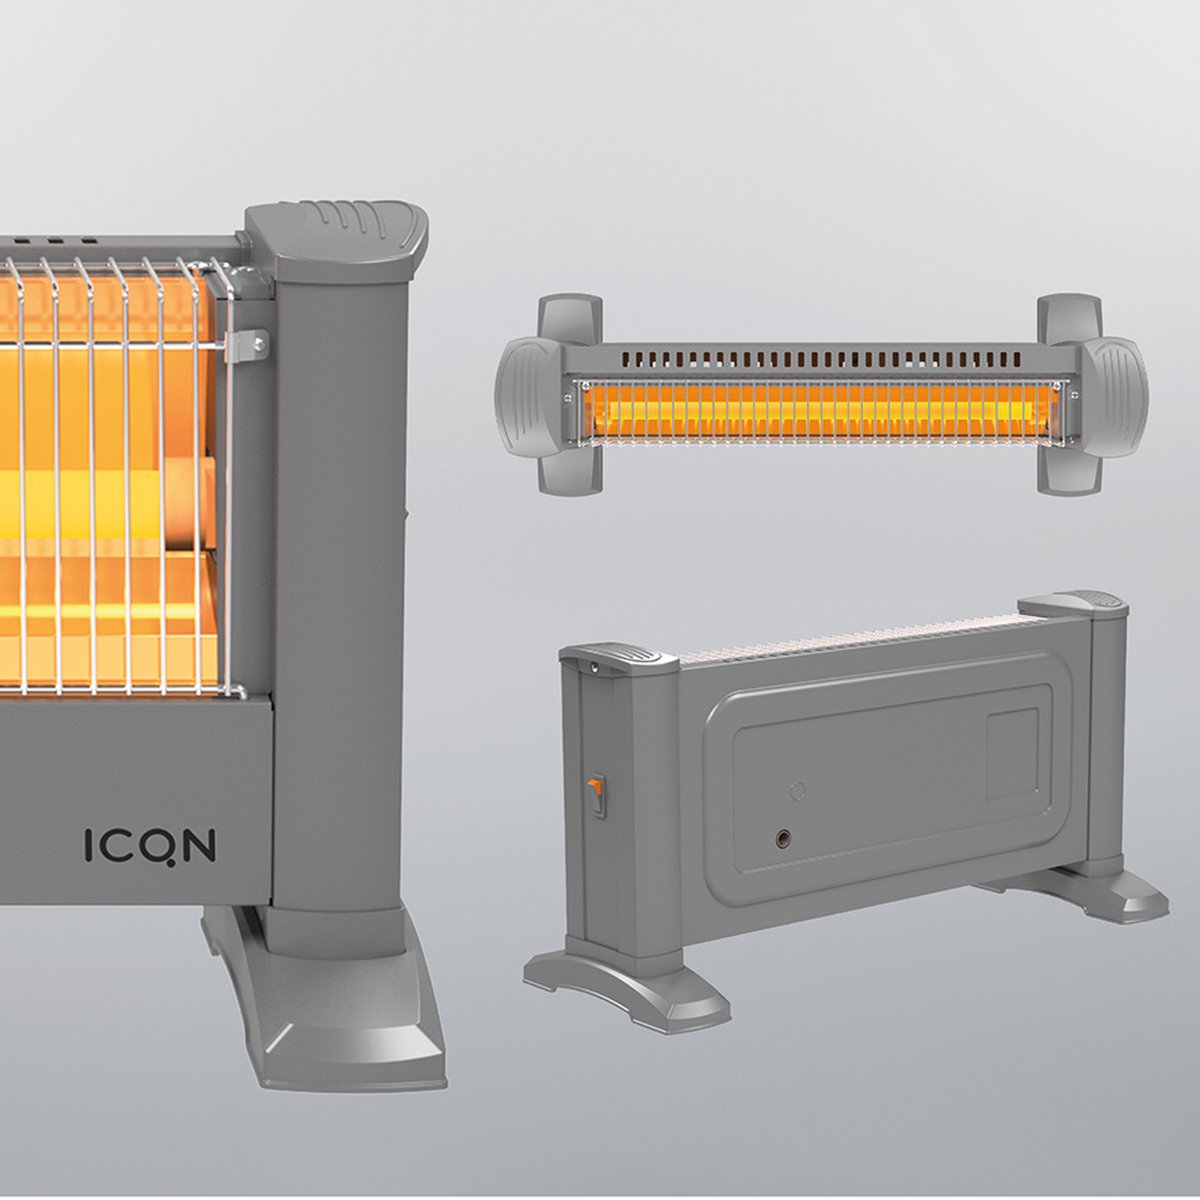 ICQN Infrarood Kachel, Elektrische Verwarming - Energiezuinig - IP20 - Elegant Grijs